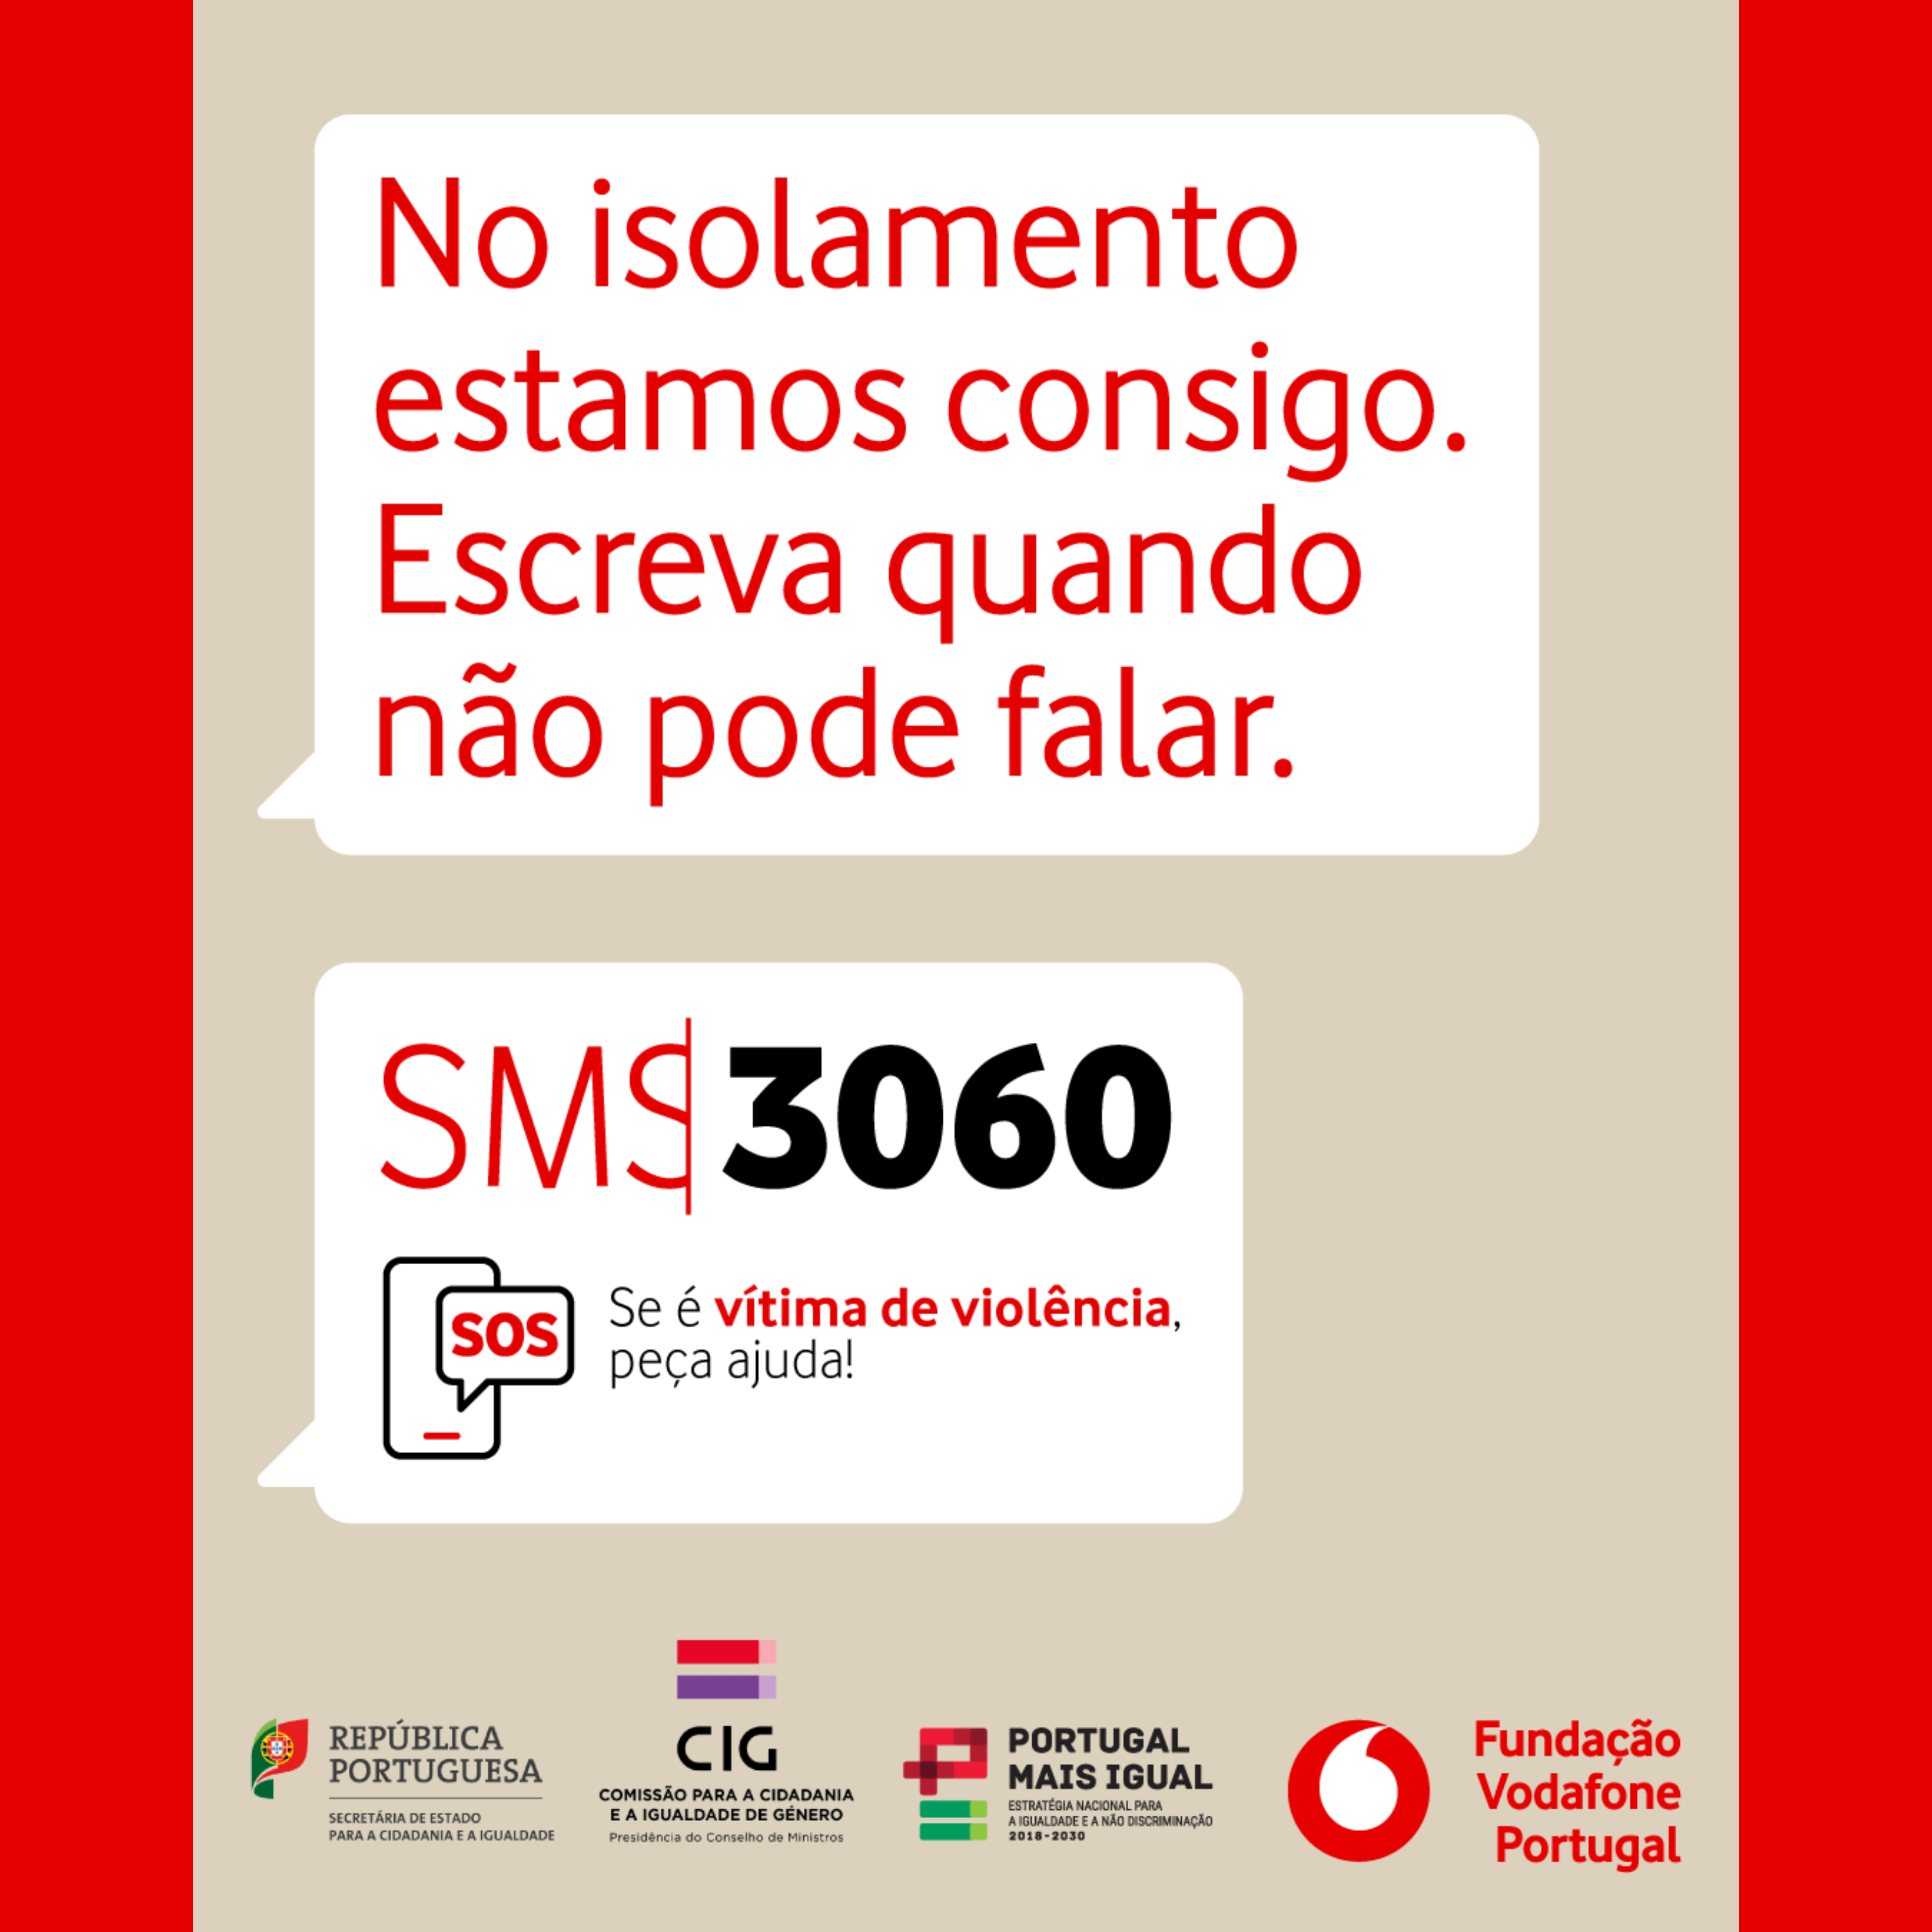 Podpora portugalské Nadace Vodafone obětem násilí